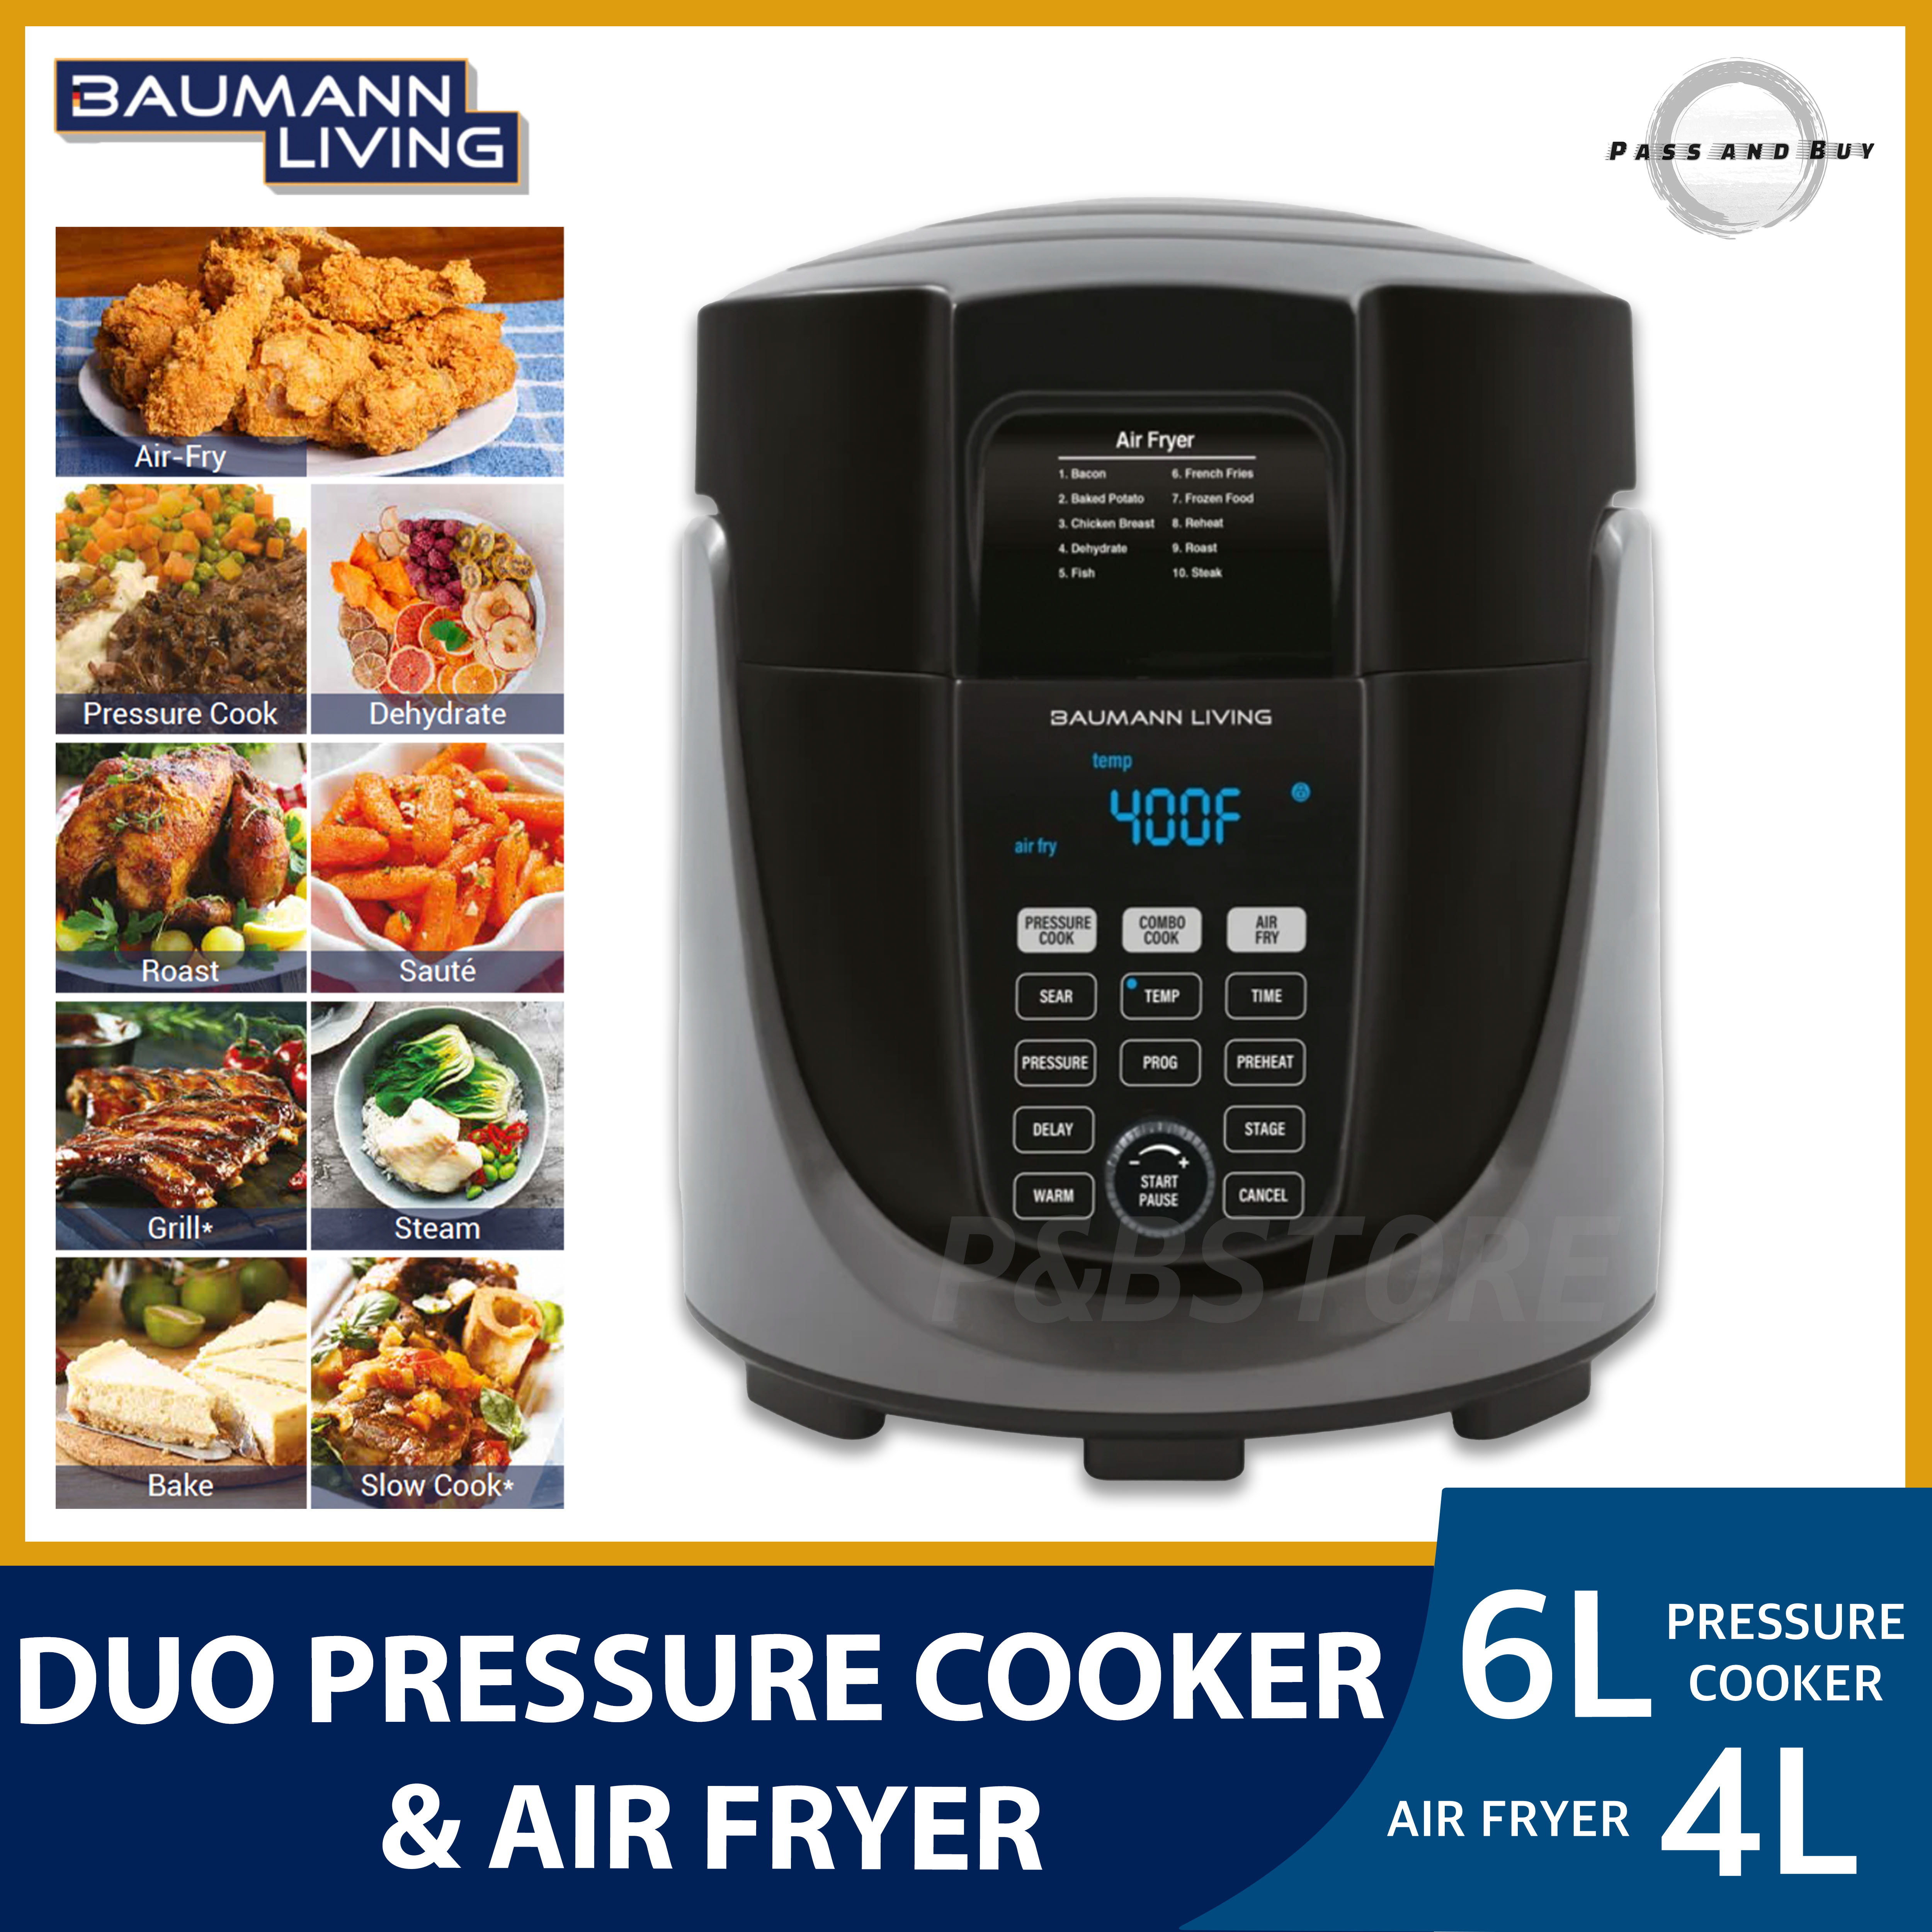 Duo Pressure Cooker & Air Fryer – Baumann Living